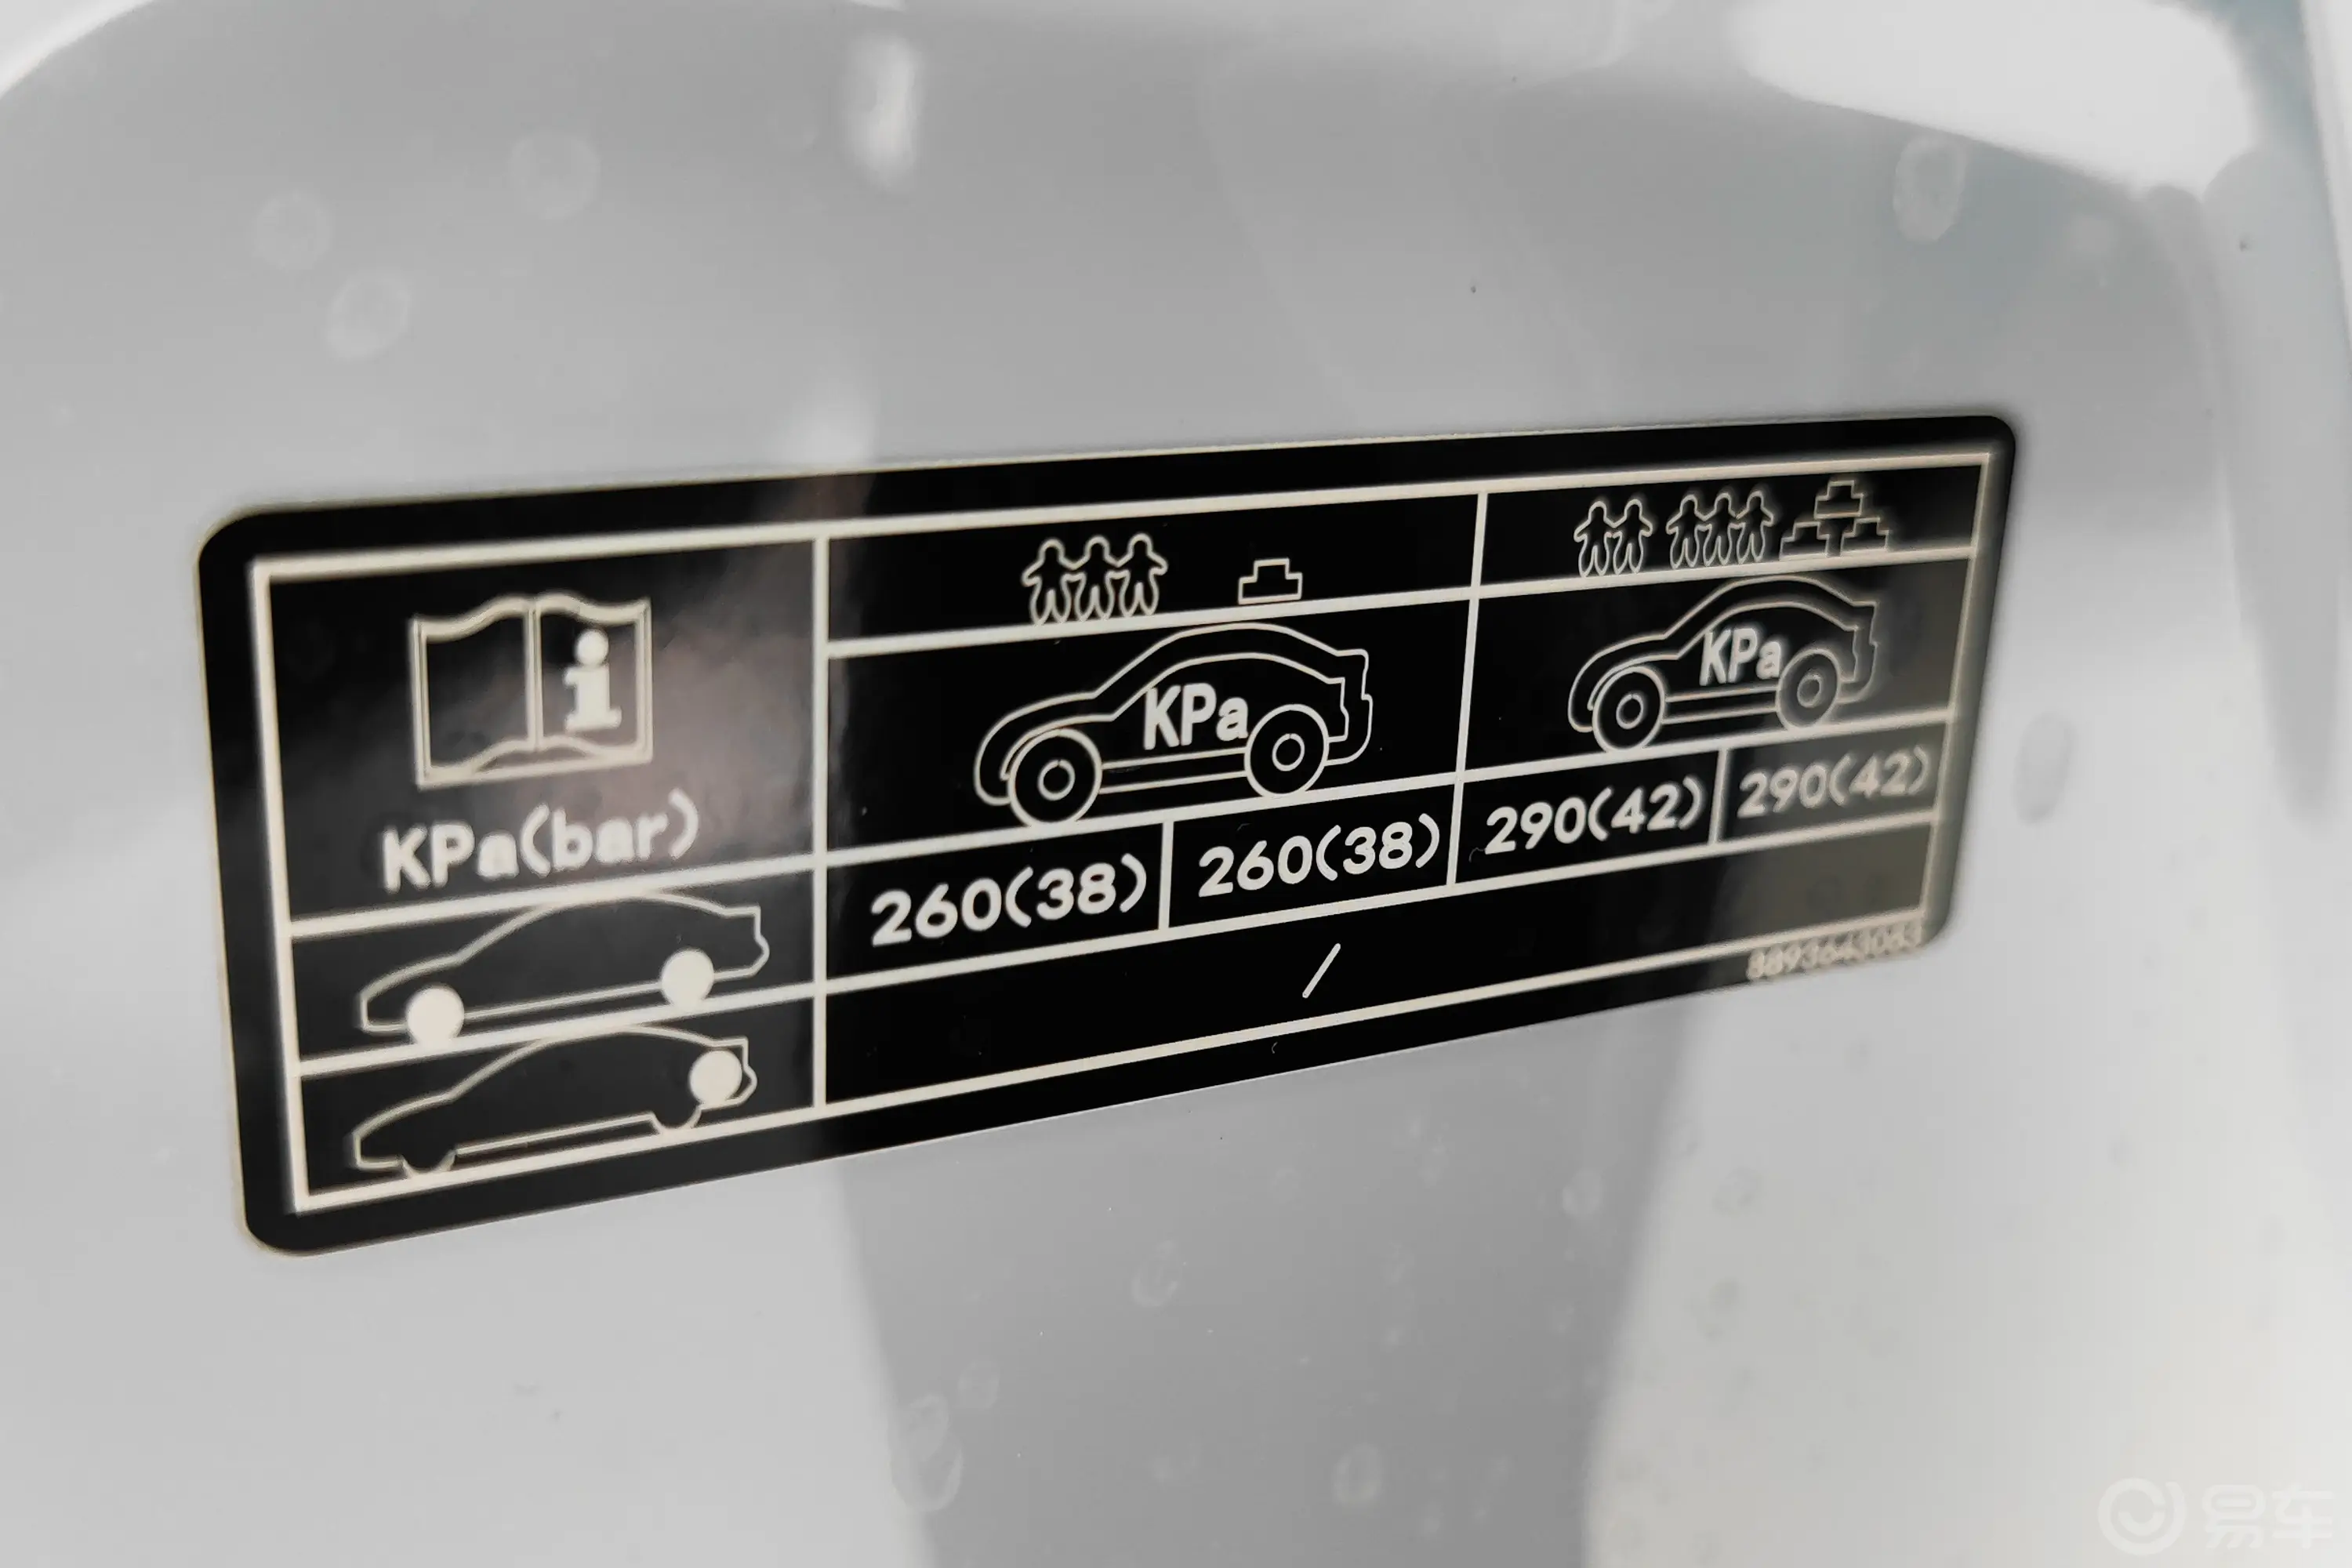 沃尔沃EX30(海外)顶配版车辆信息铭牌